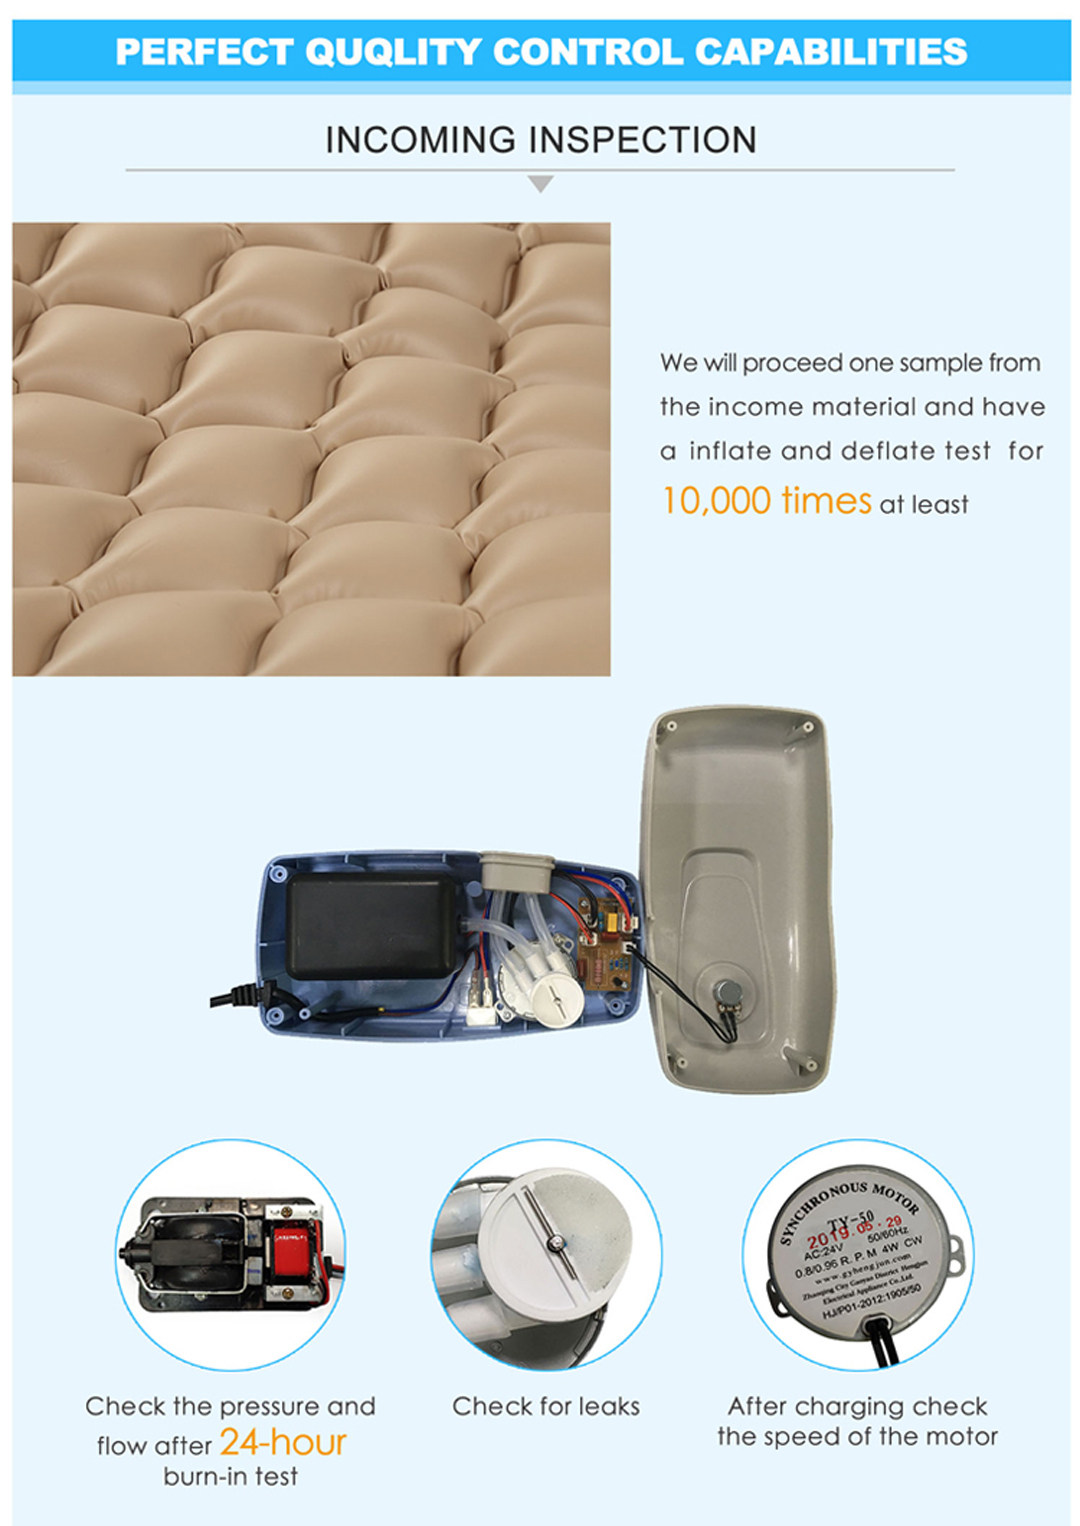 anti decubitus mattress